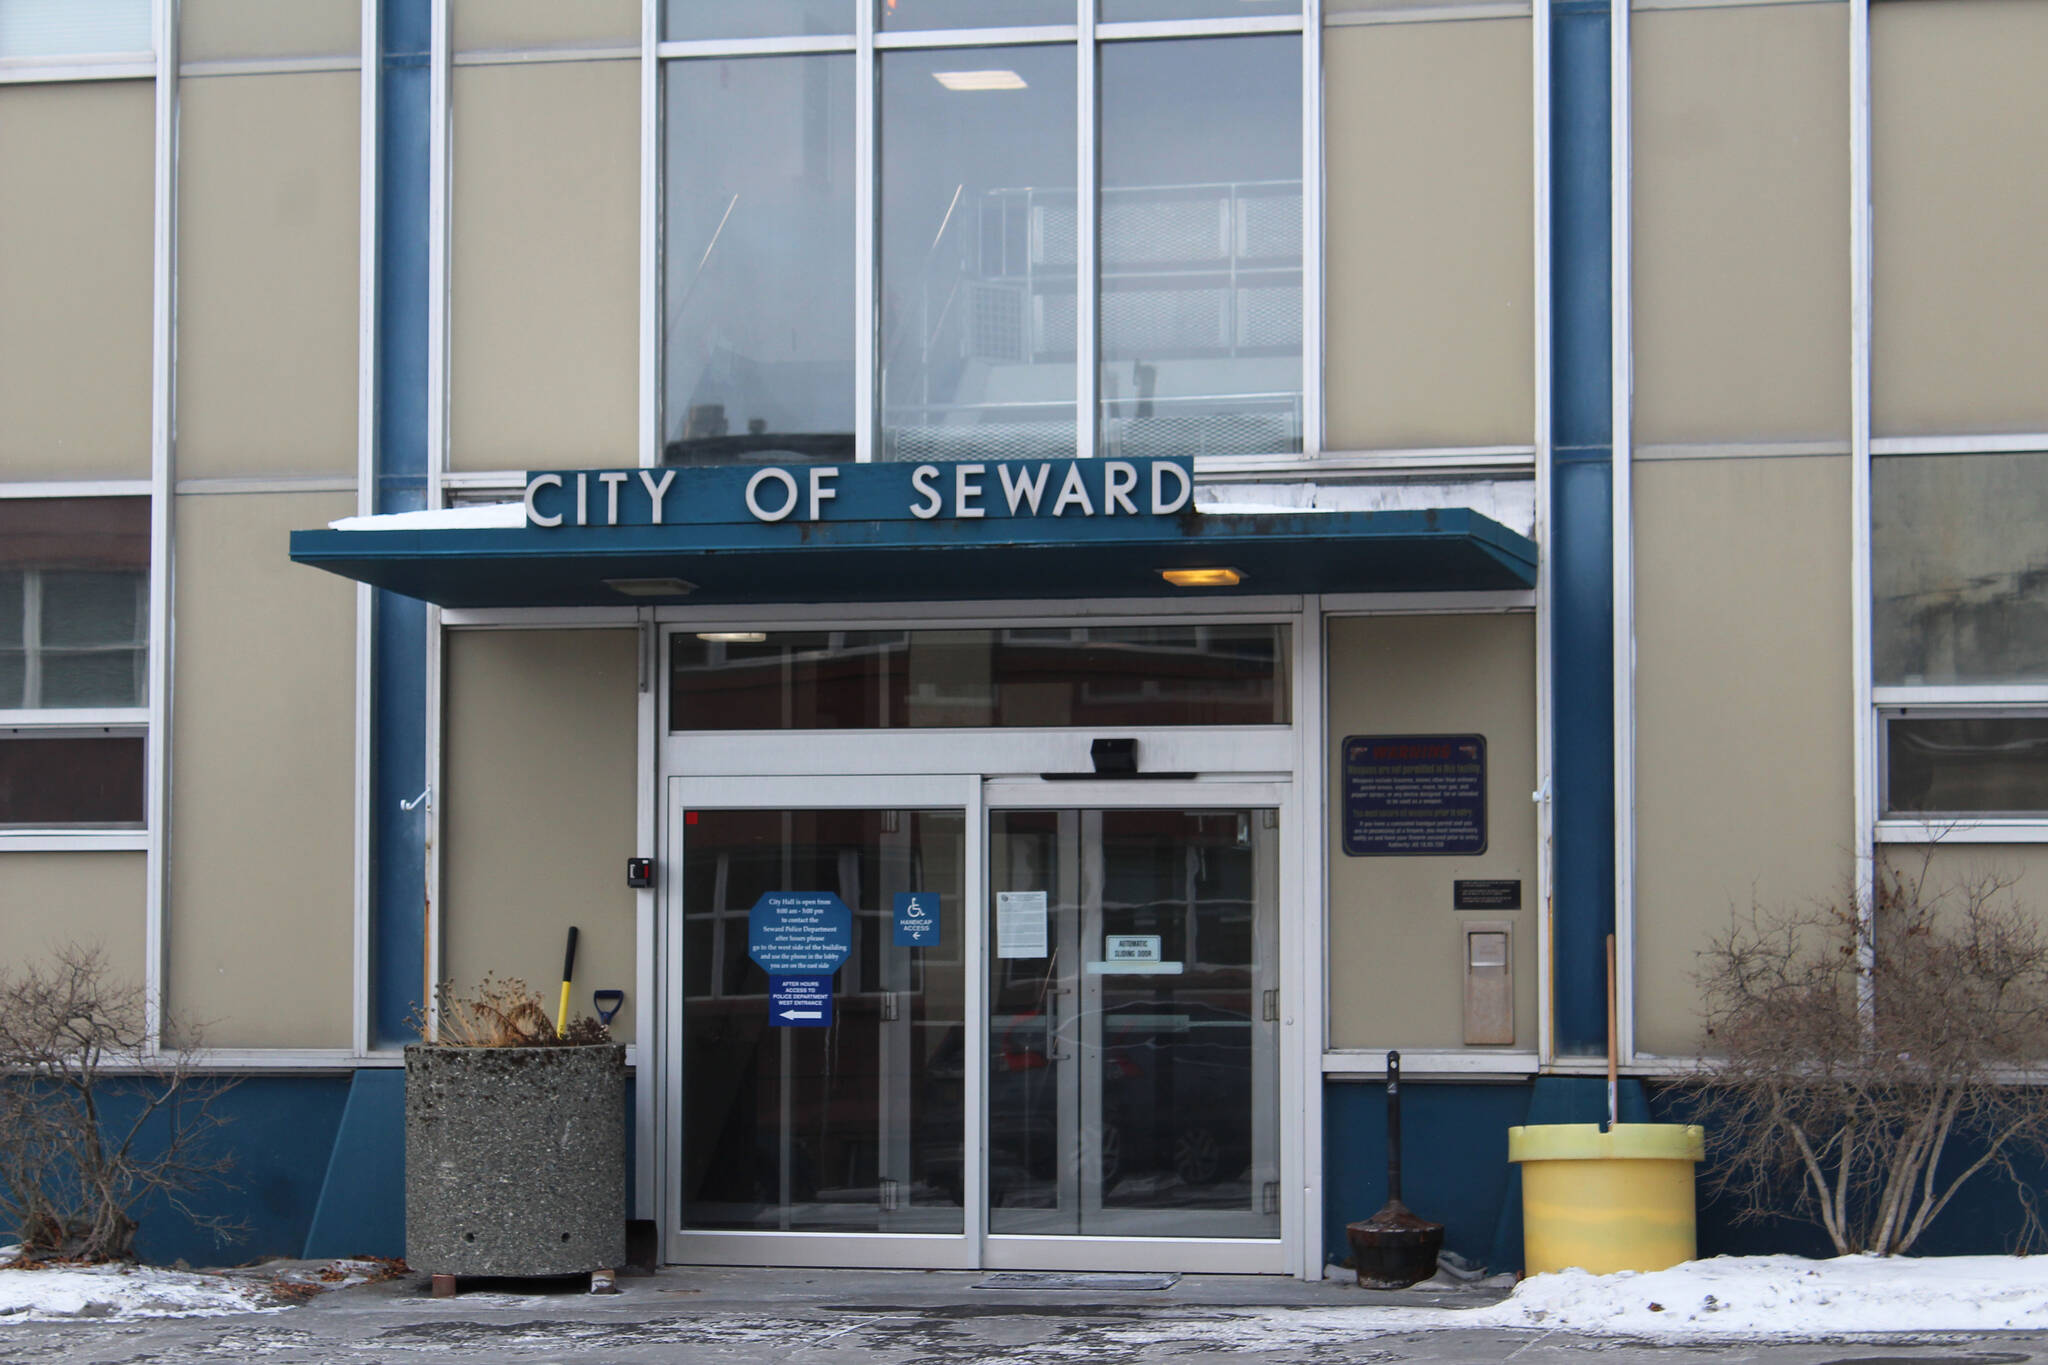 Signs direct visitors at Seward City Hall on Sunday, Nov. 28, 2021, in Seward, Alaska. (Ashlyn O’Hara/Peninsula Clarion)